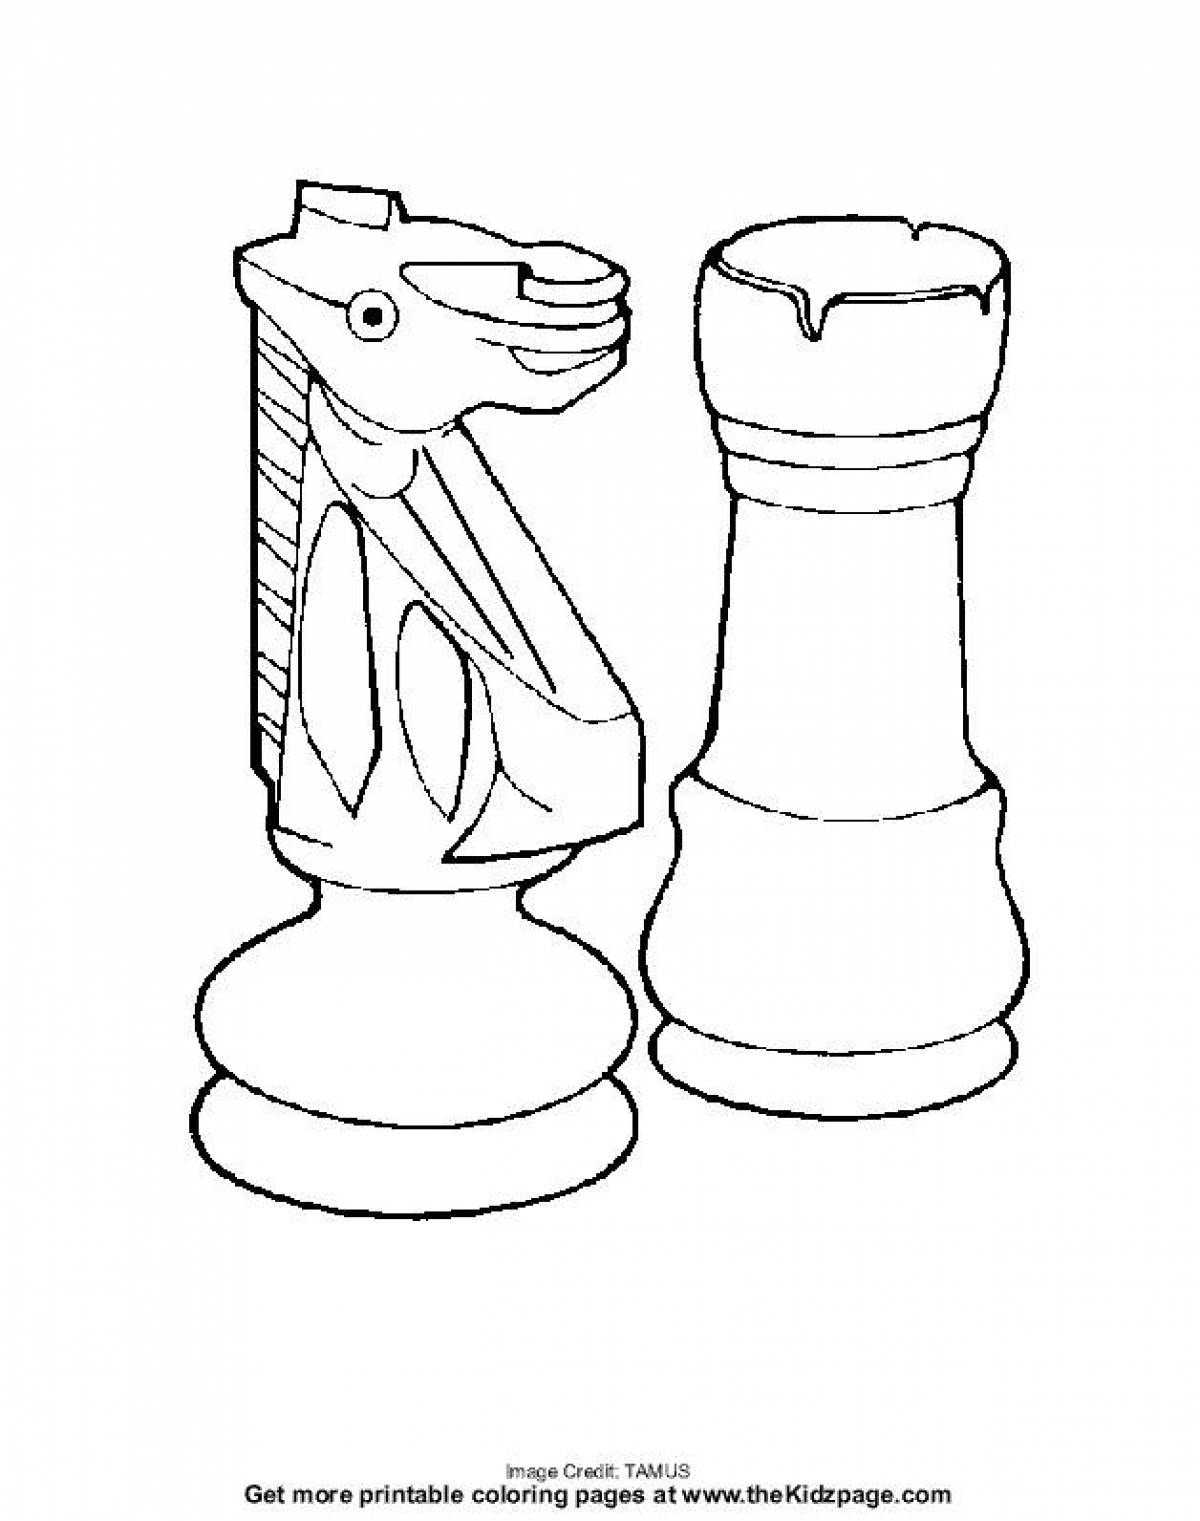 Chess #2